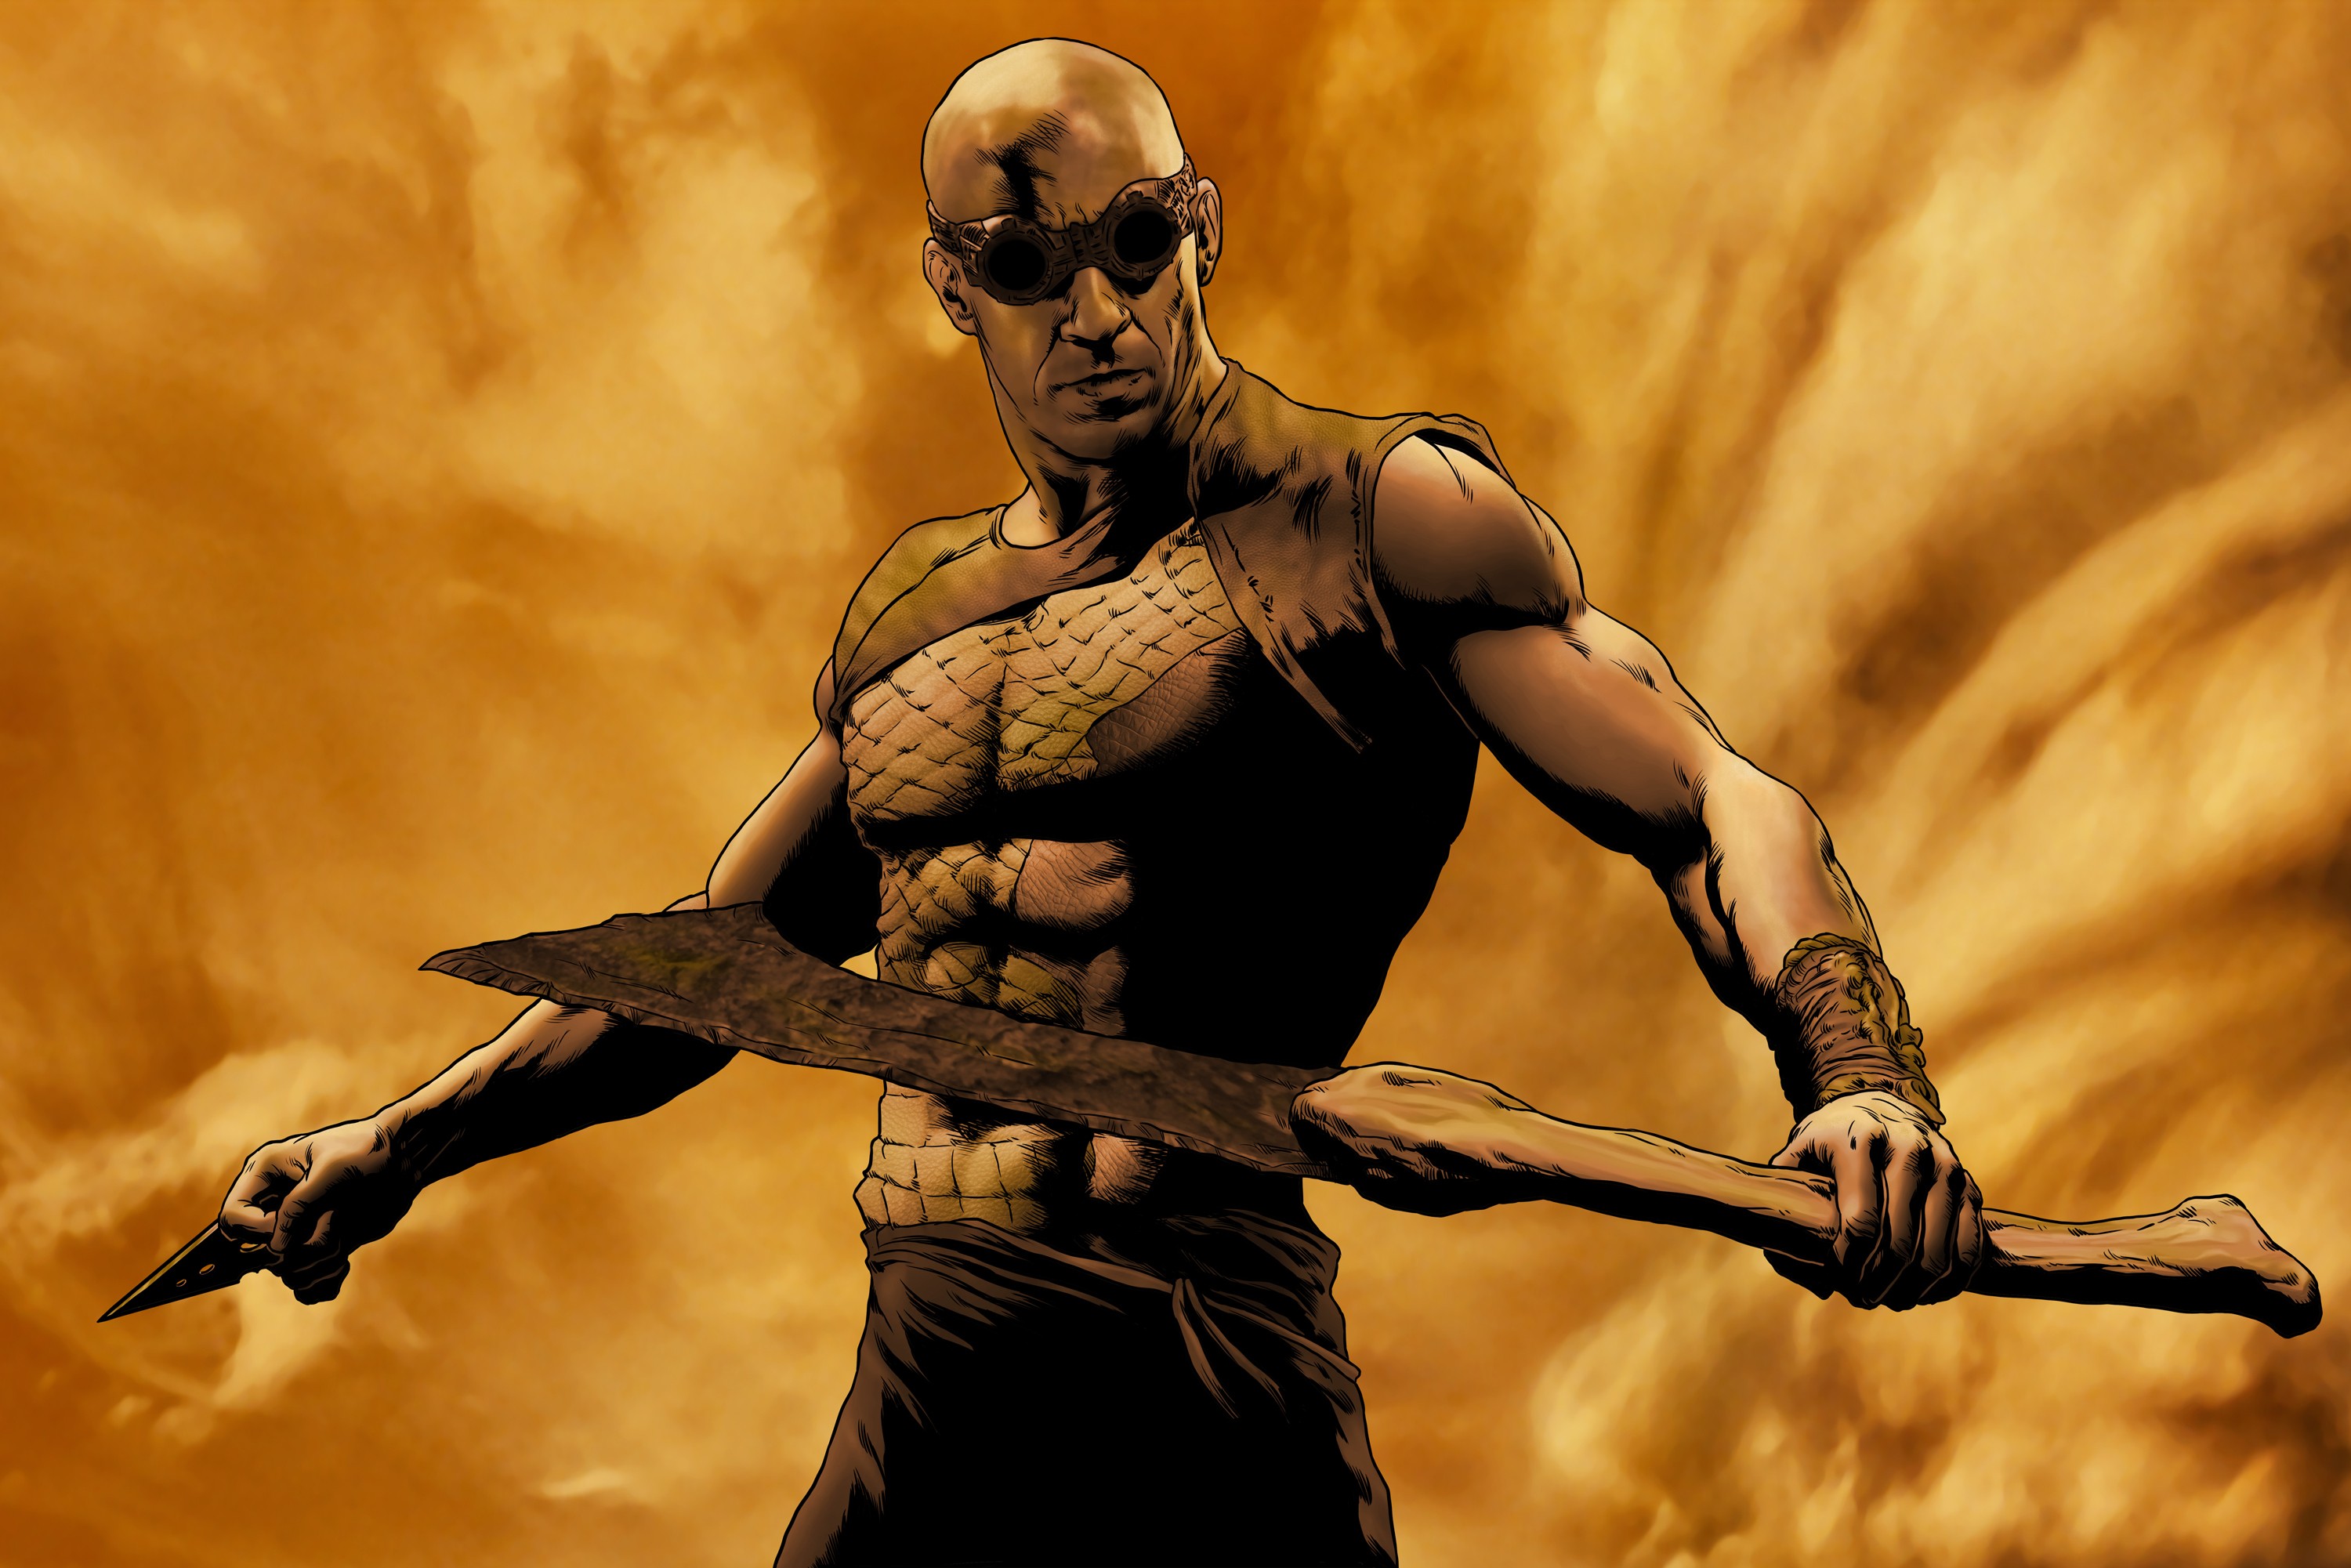 General 3000x2001 Vin Diesel artwork actor Riddick movie characters movies Science Fiction Men men weapon